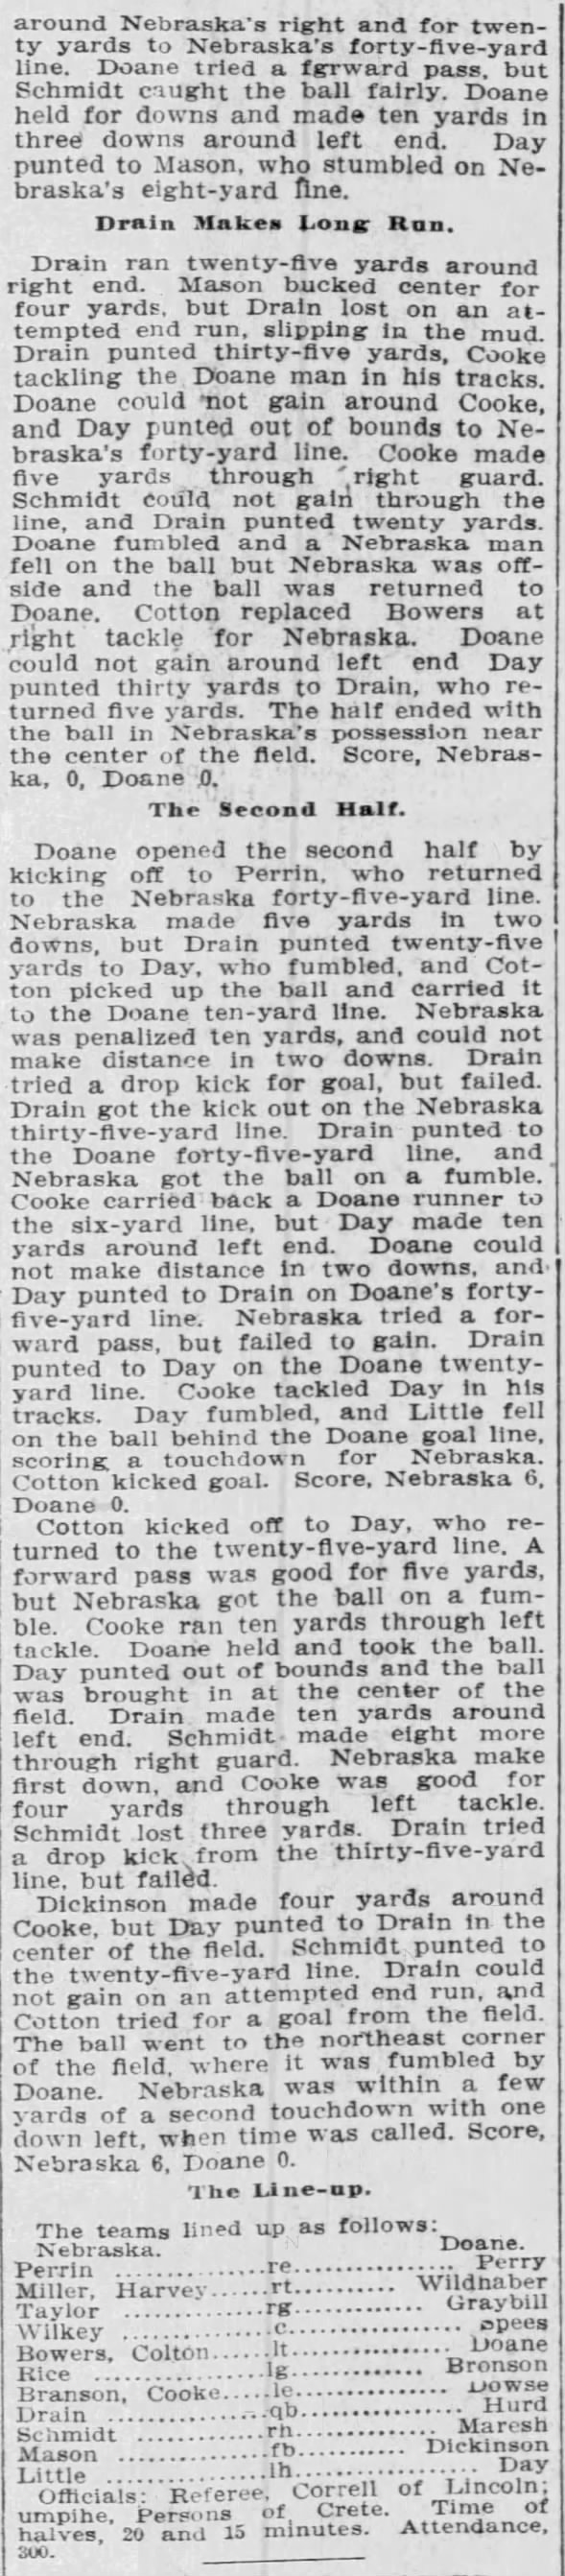 1906 Doane-Nebraska practice game 2